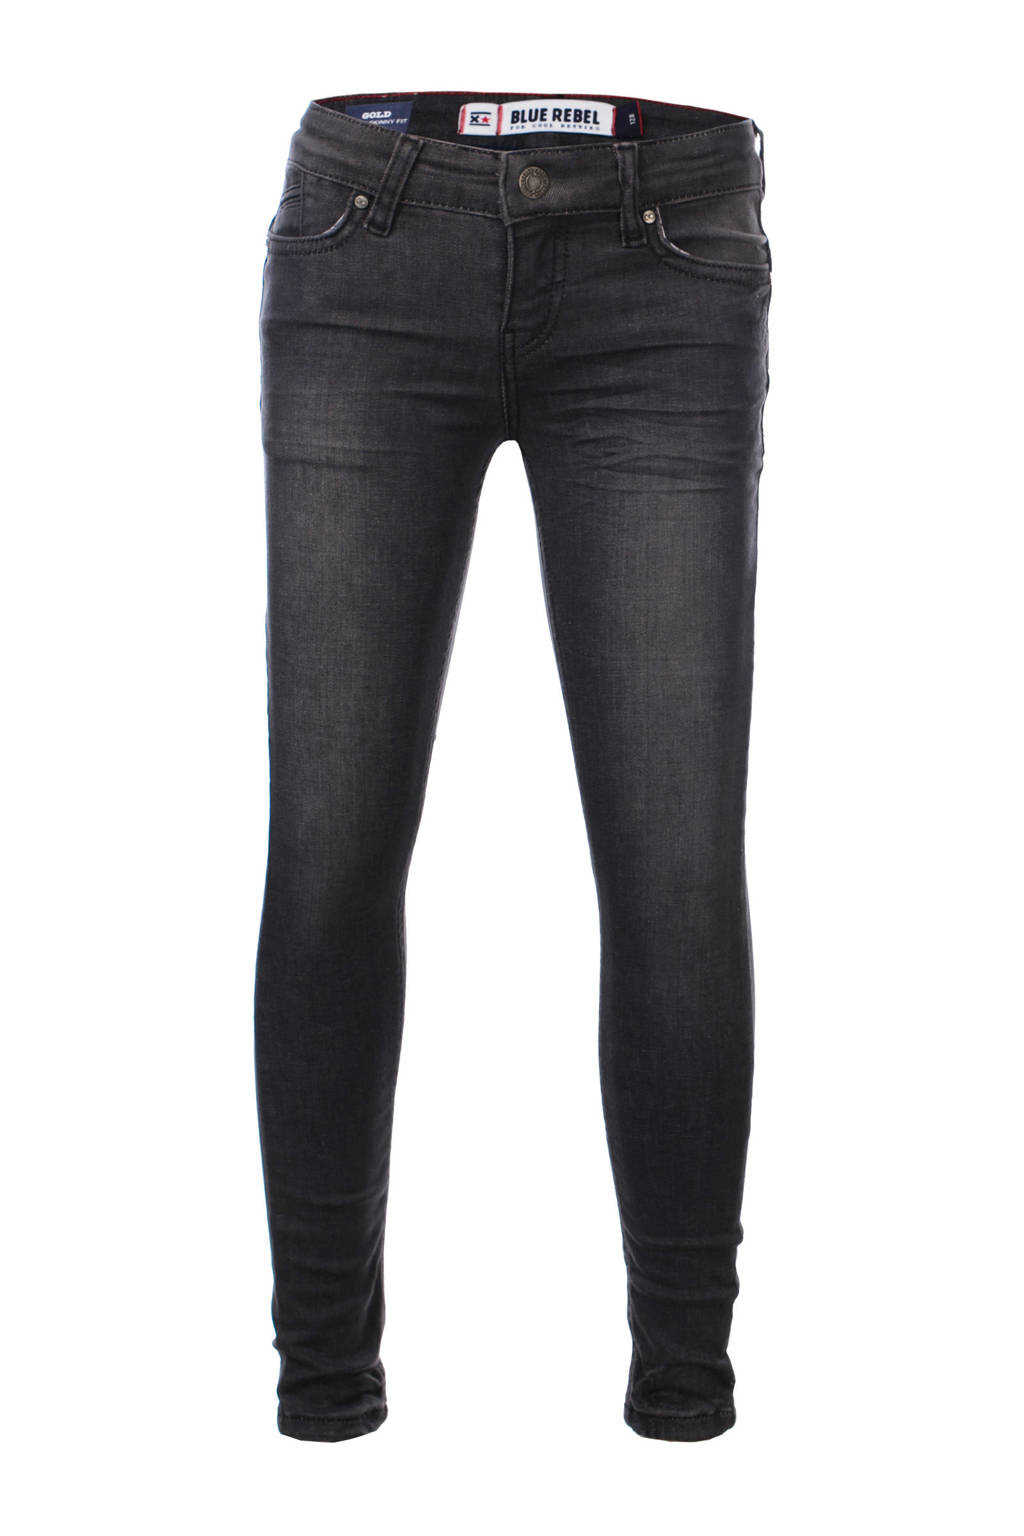 Blue Rebel super skinny jeans Gold verwassen zwart (rock wash)